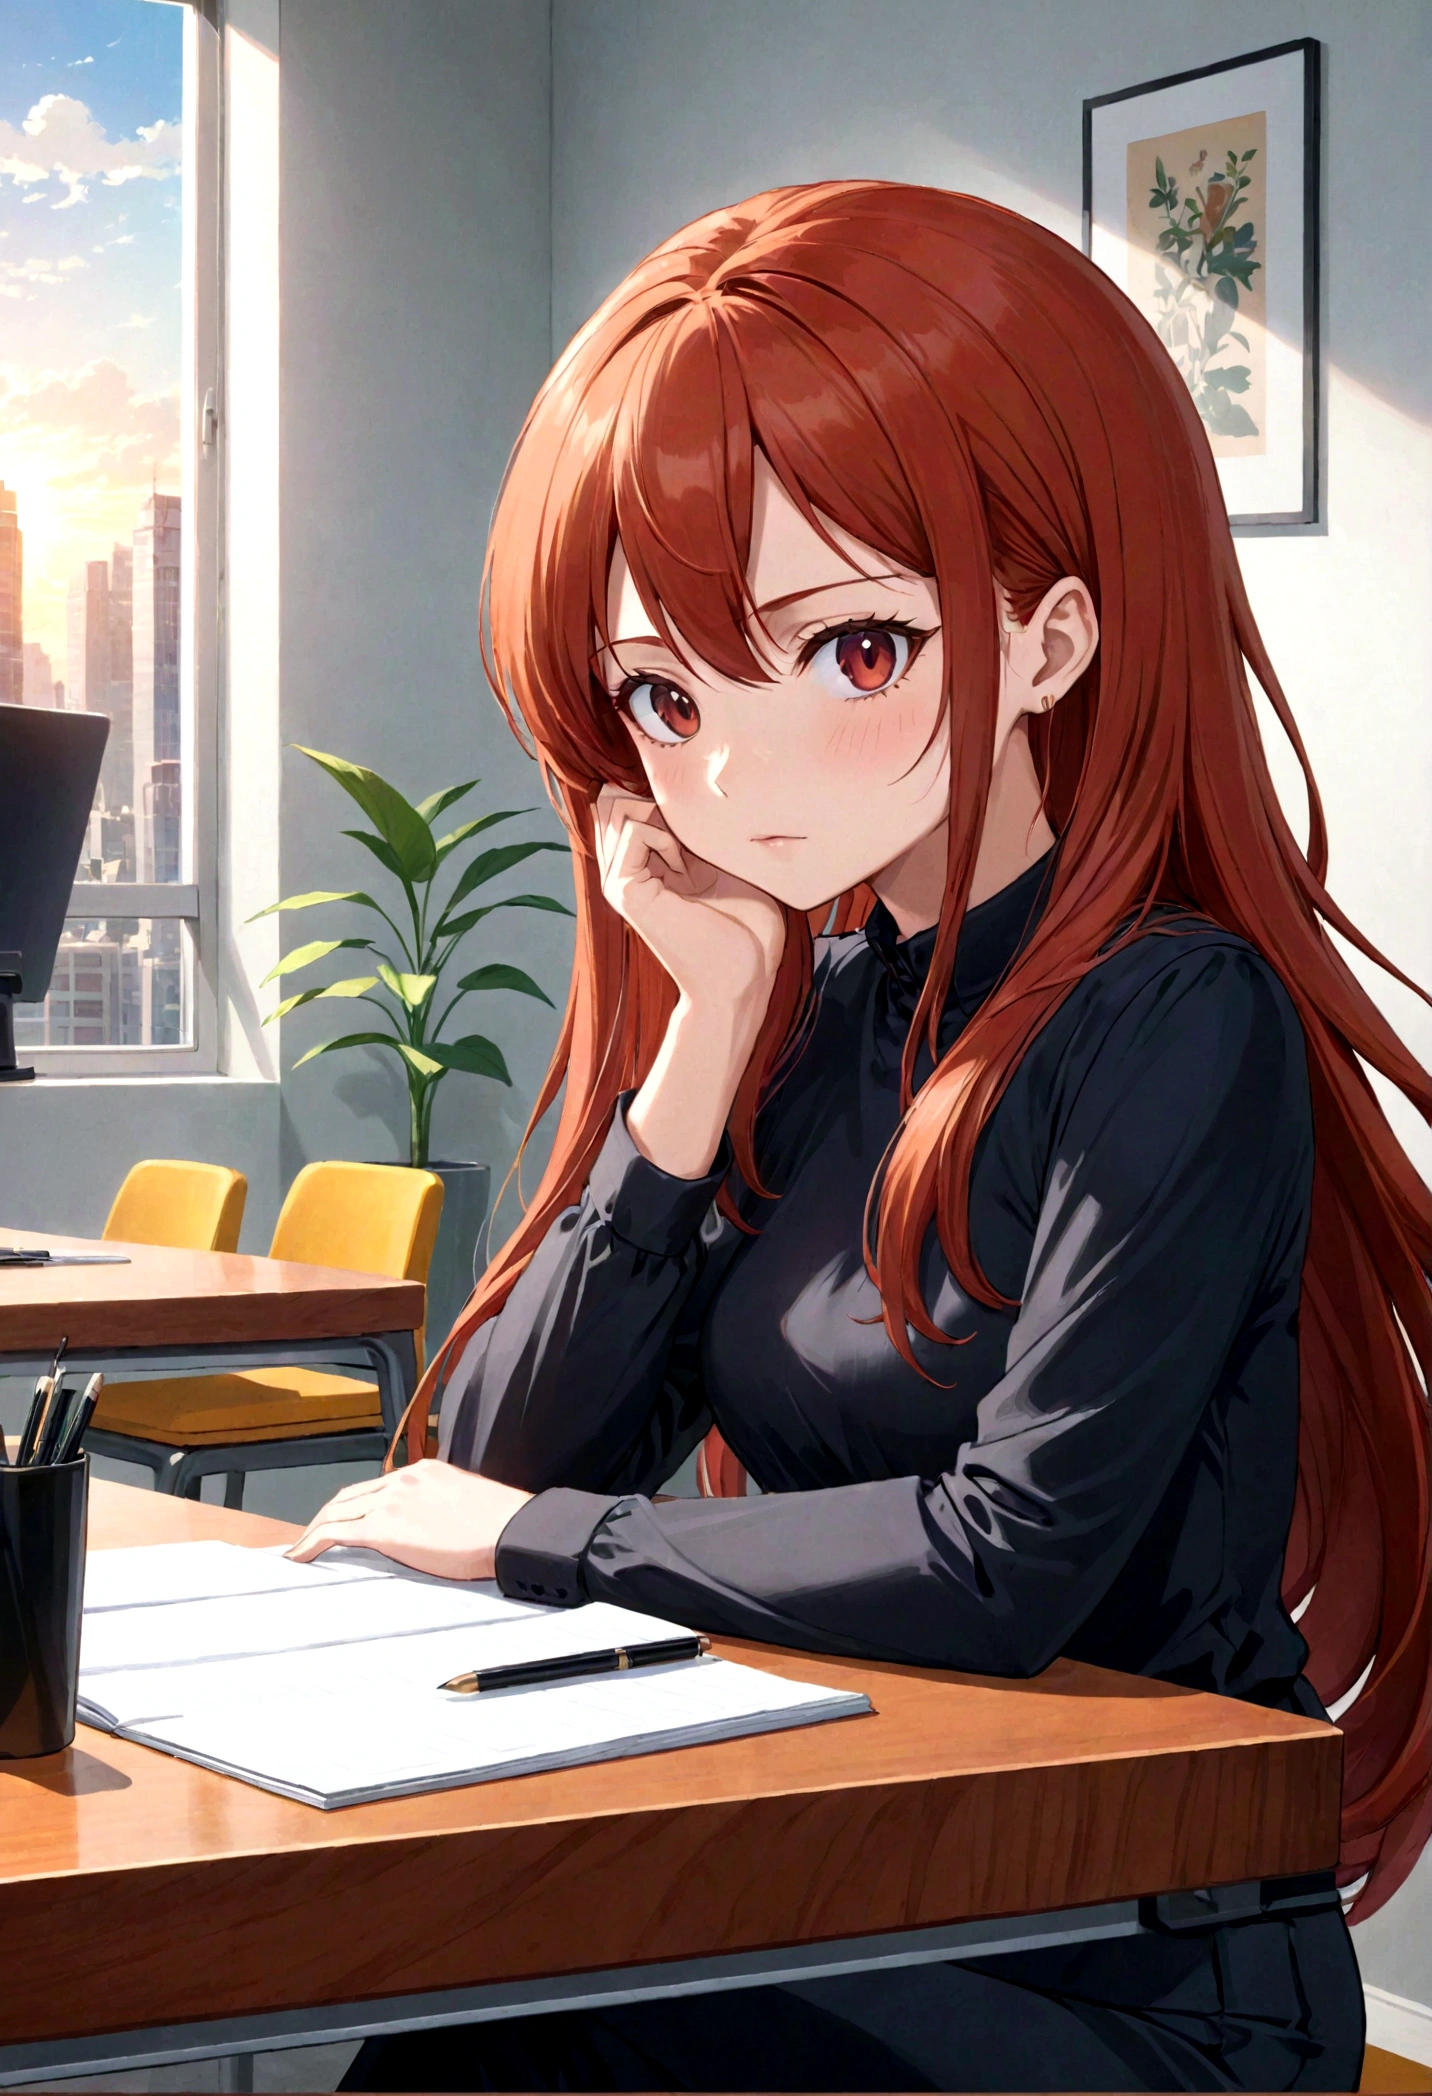 hermosa profesora pelirroja sentada en su escritorio, apariencia petulante, mirando al espectador, tiempo contemporáneo, estilo anime, 8k